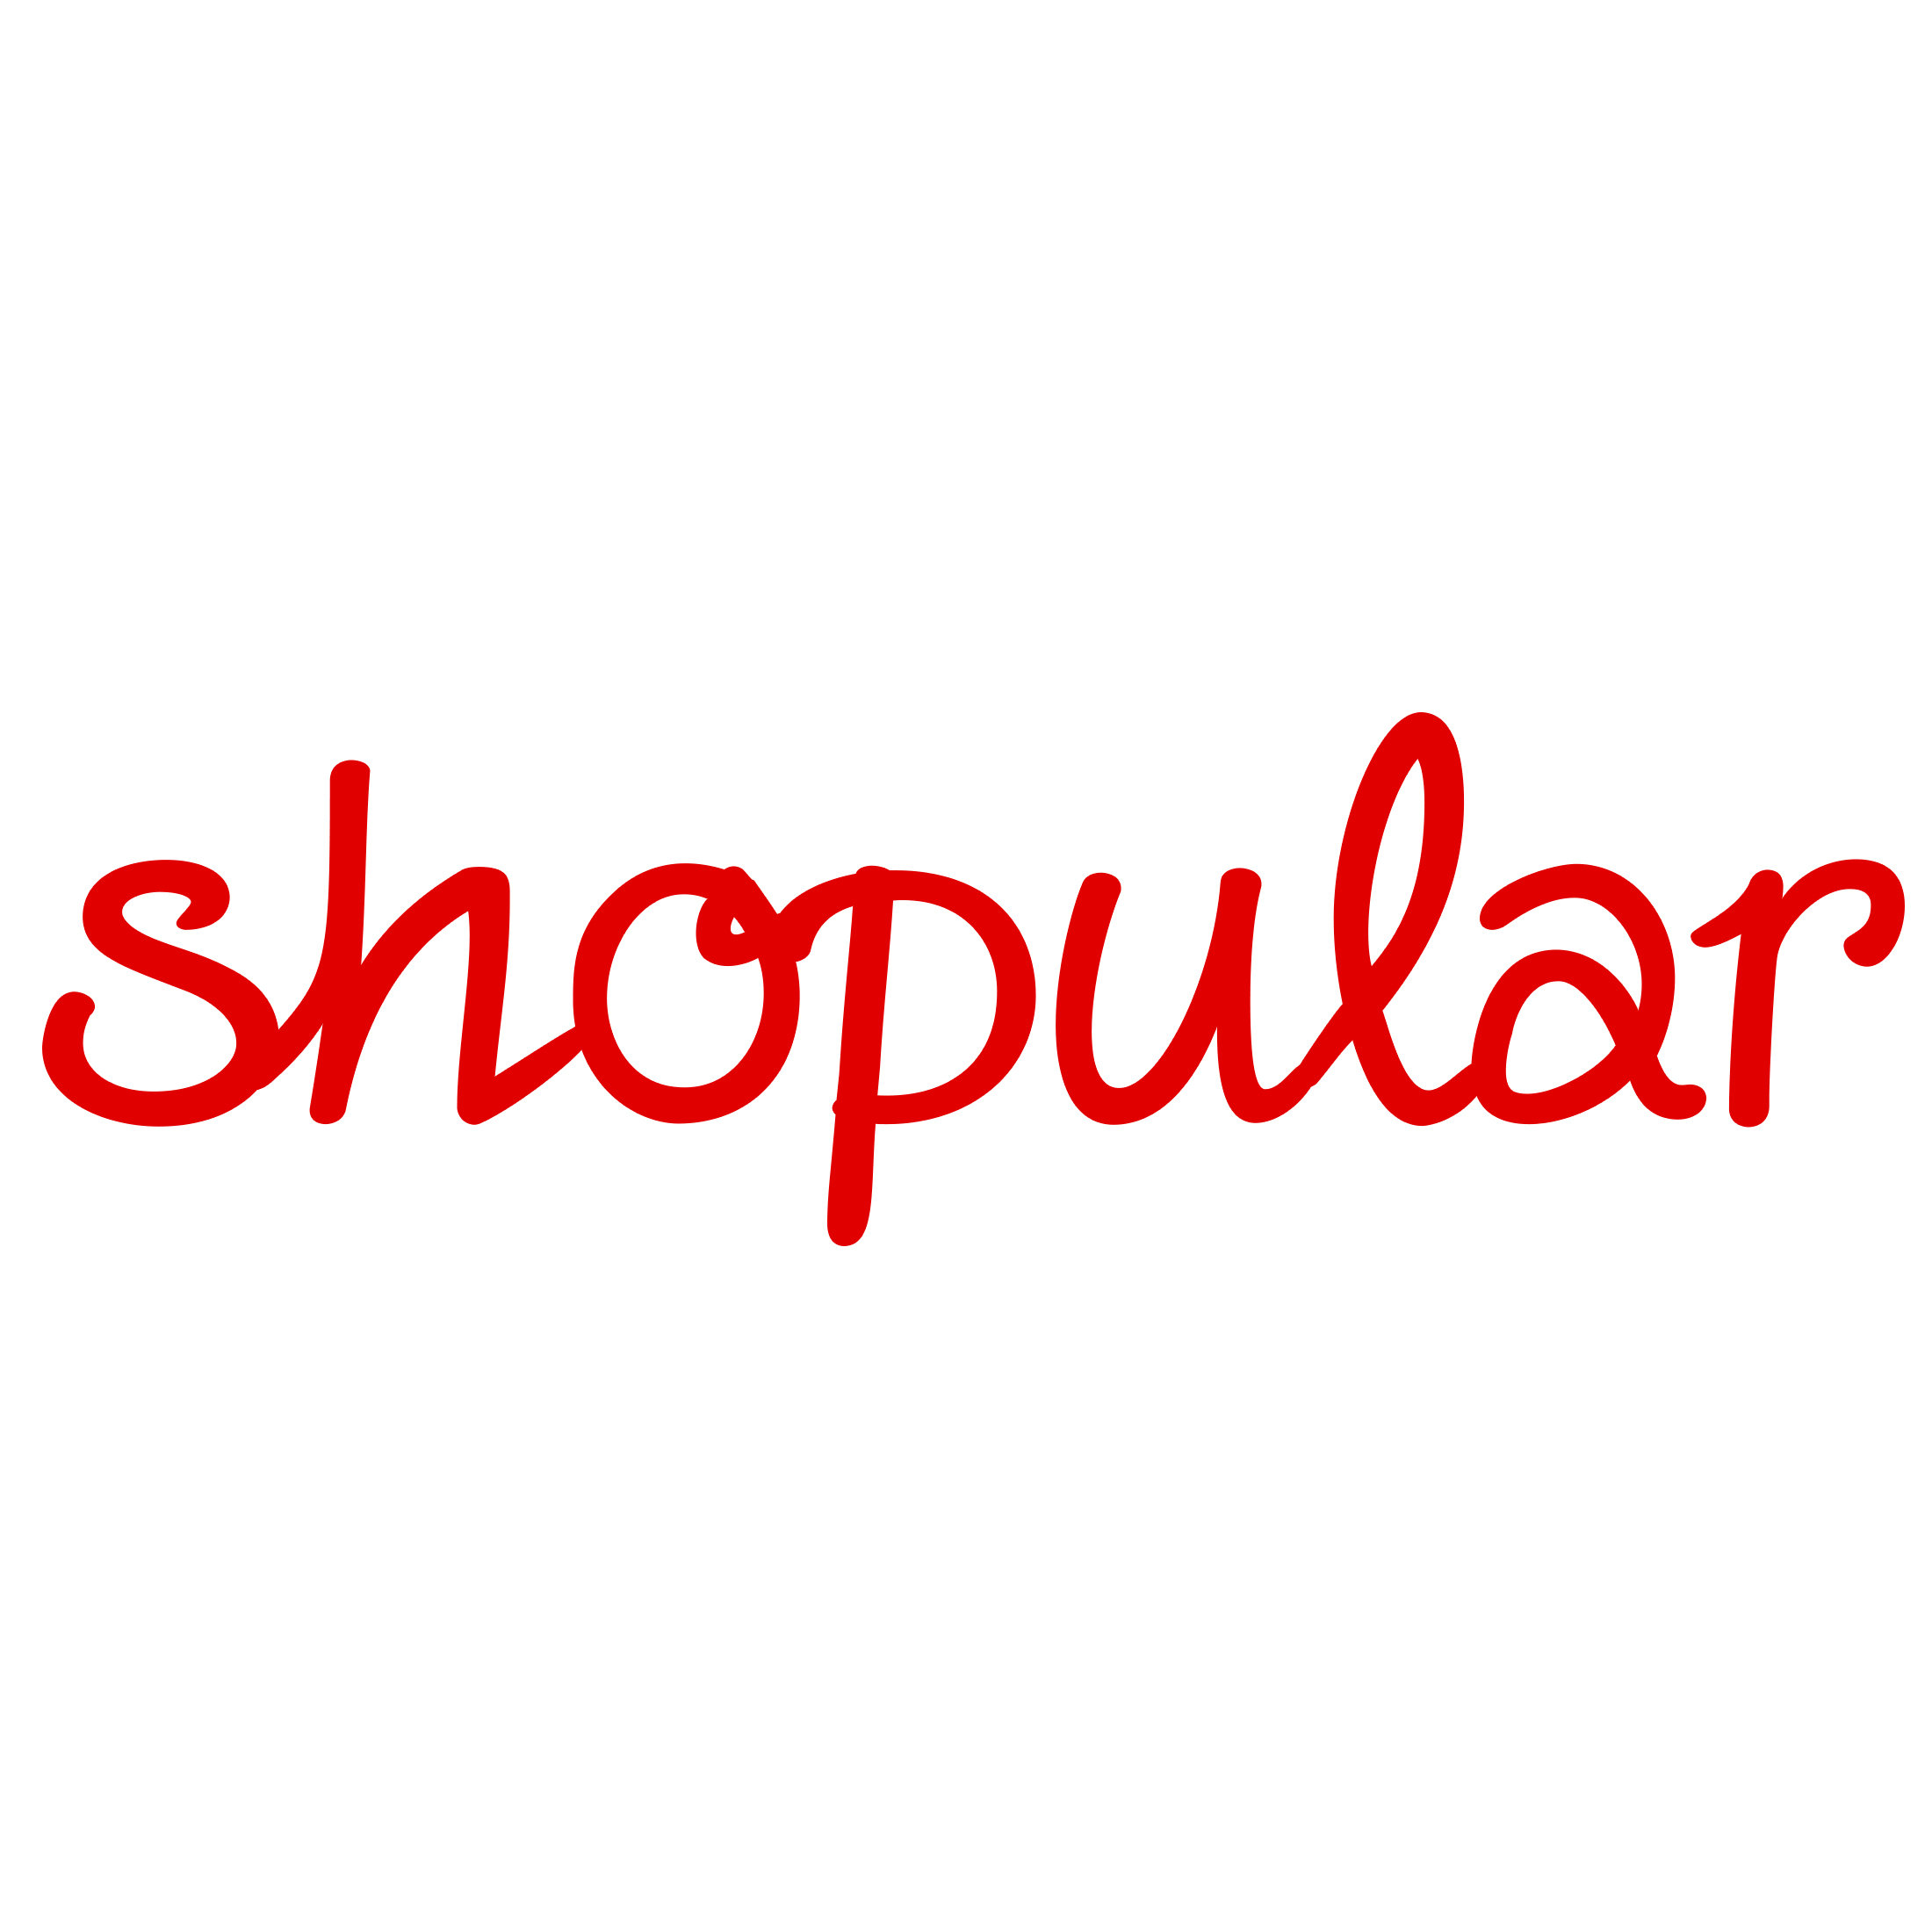 Shopular